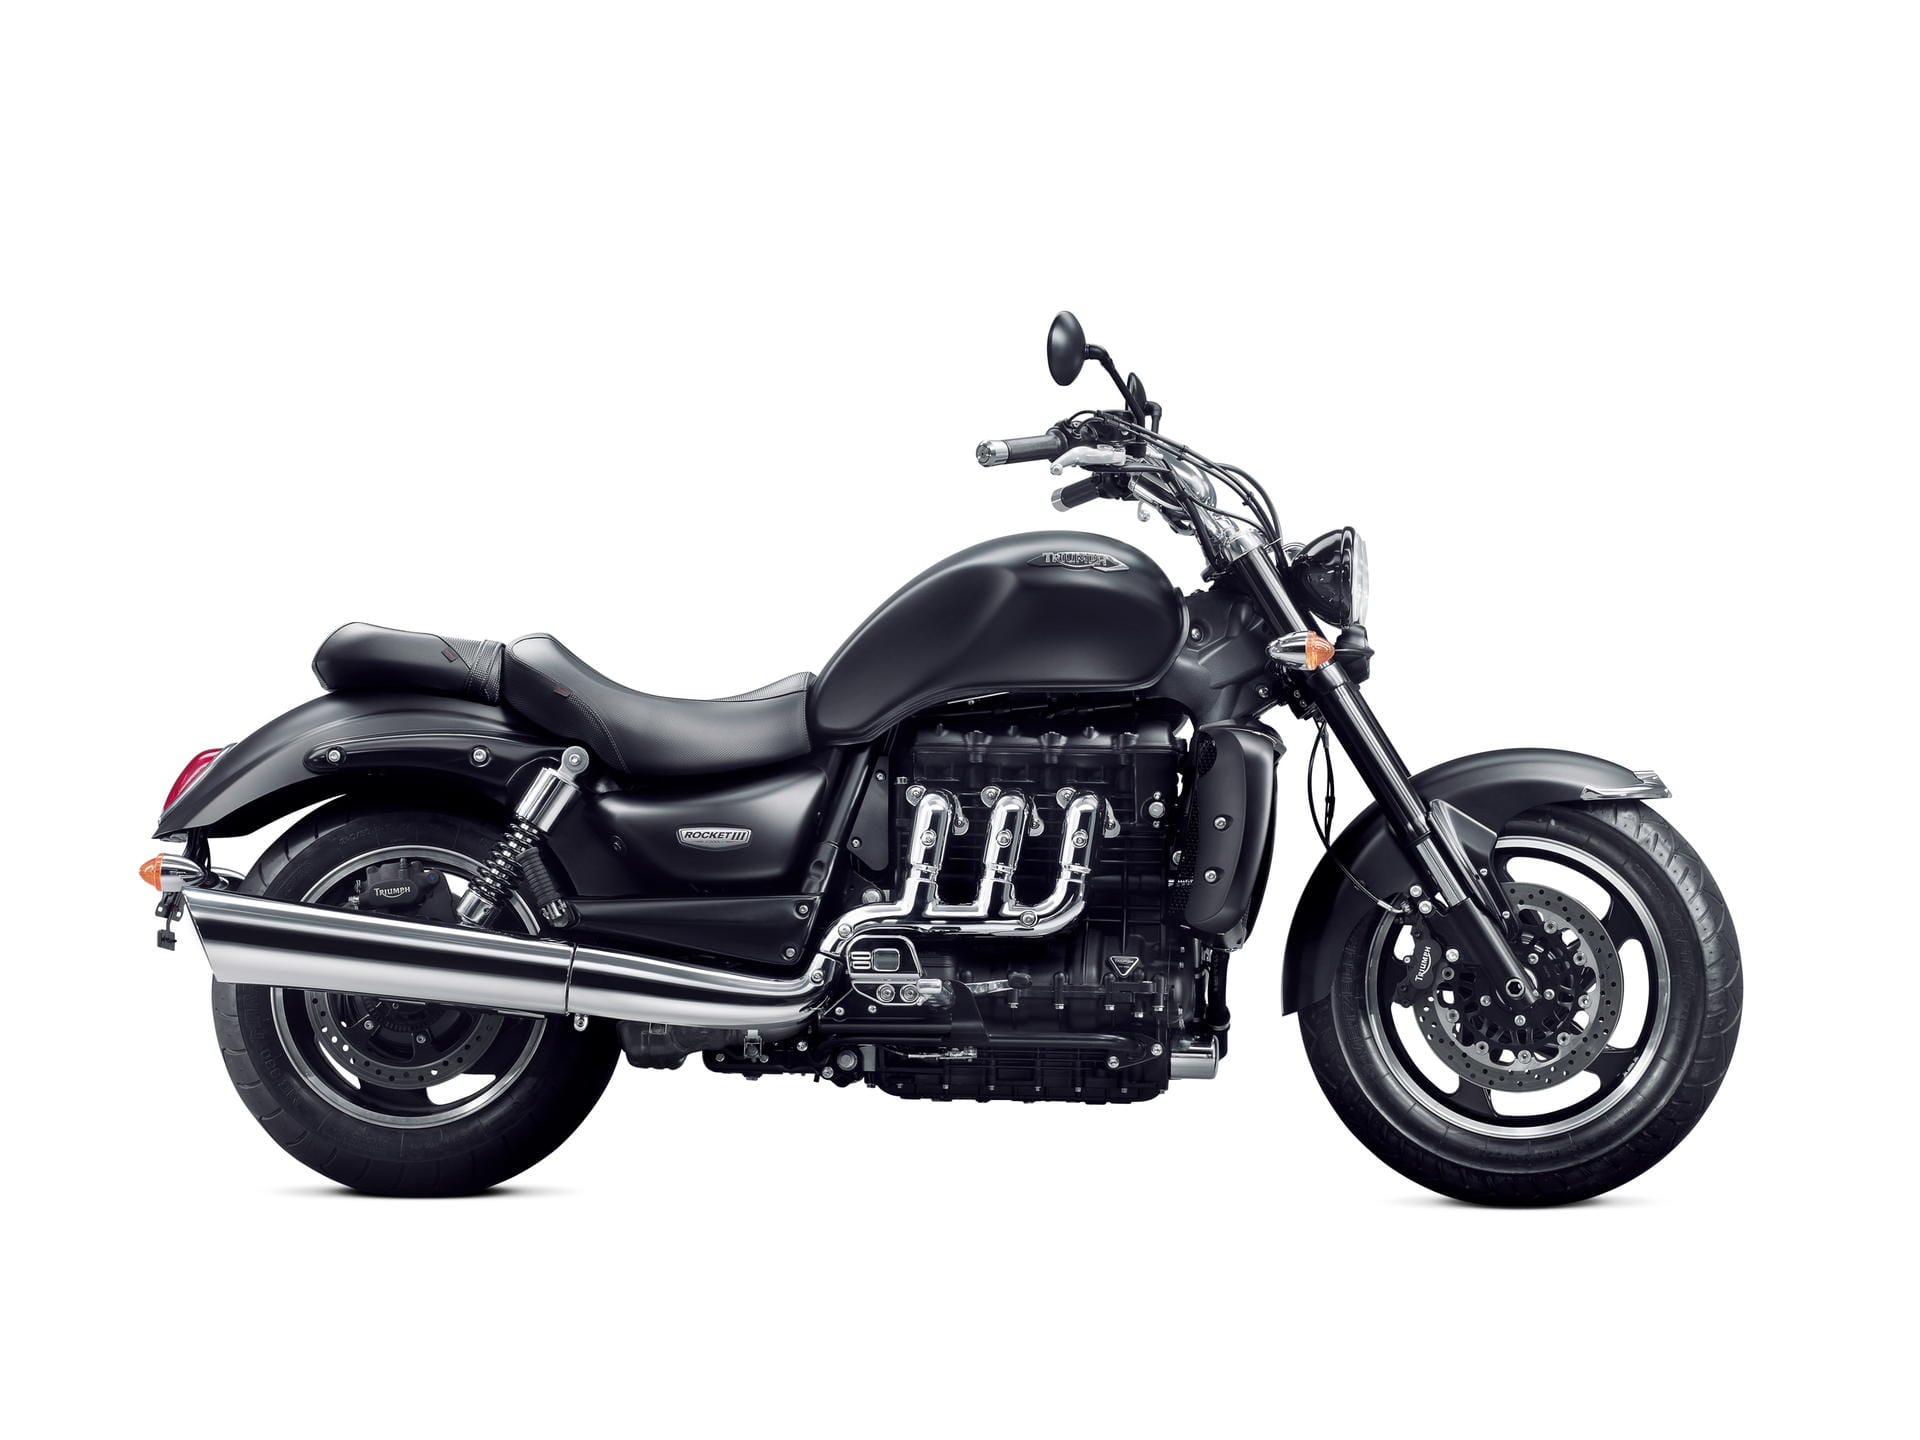 Motorrad mit Muskeln: Großer Hubraum und hohes Drehmoment kennzeichnen Muscle Bikes wie die Triumph Rocket III.